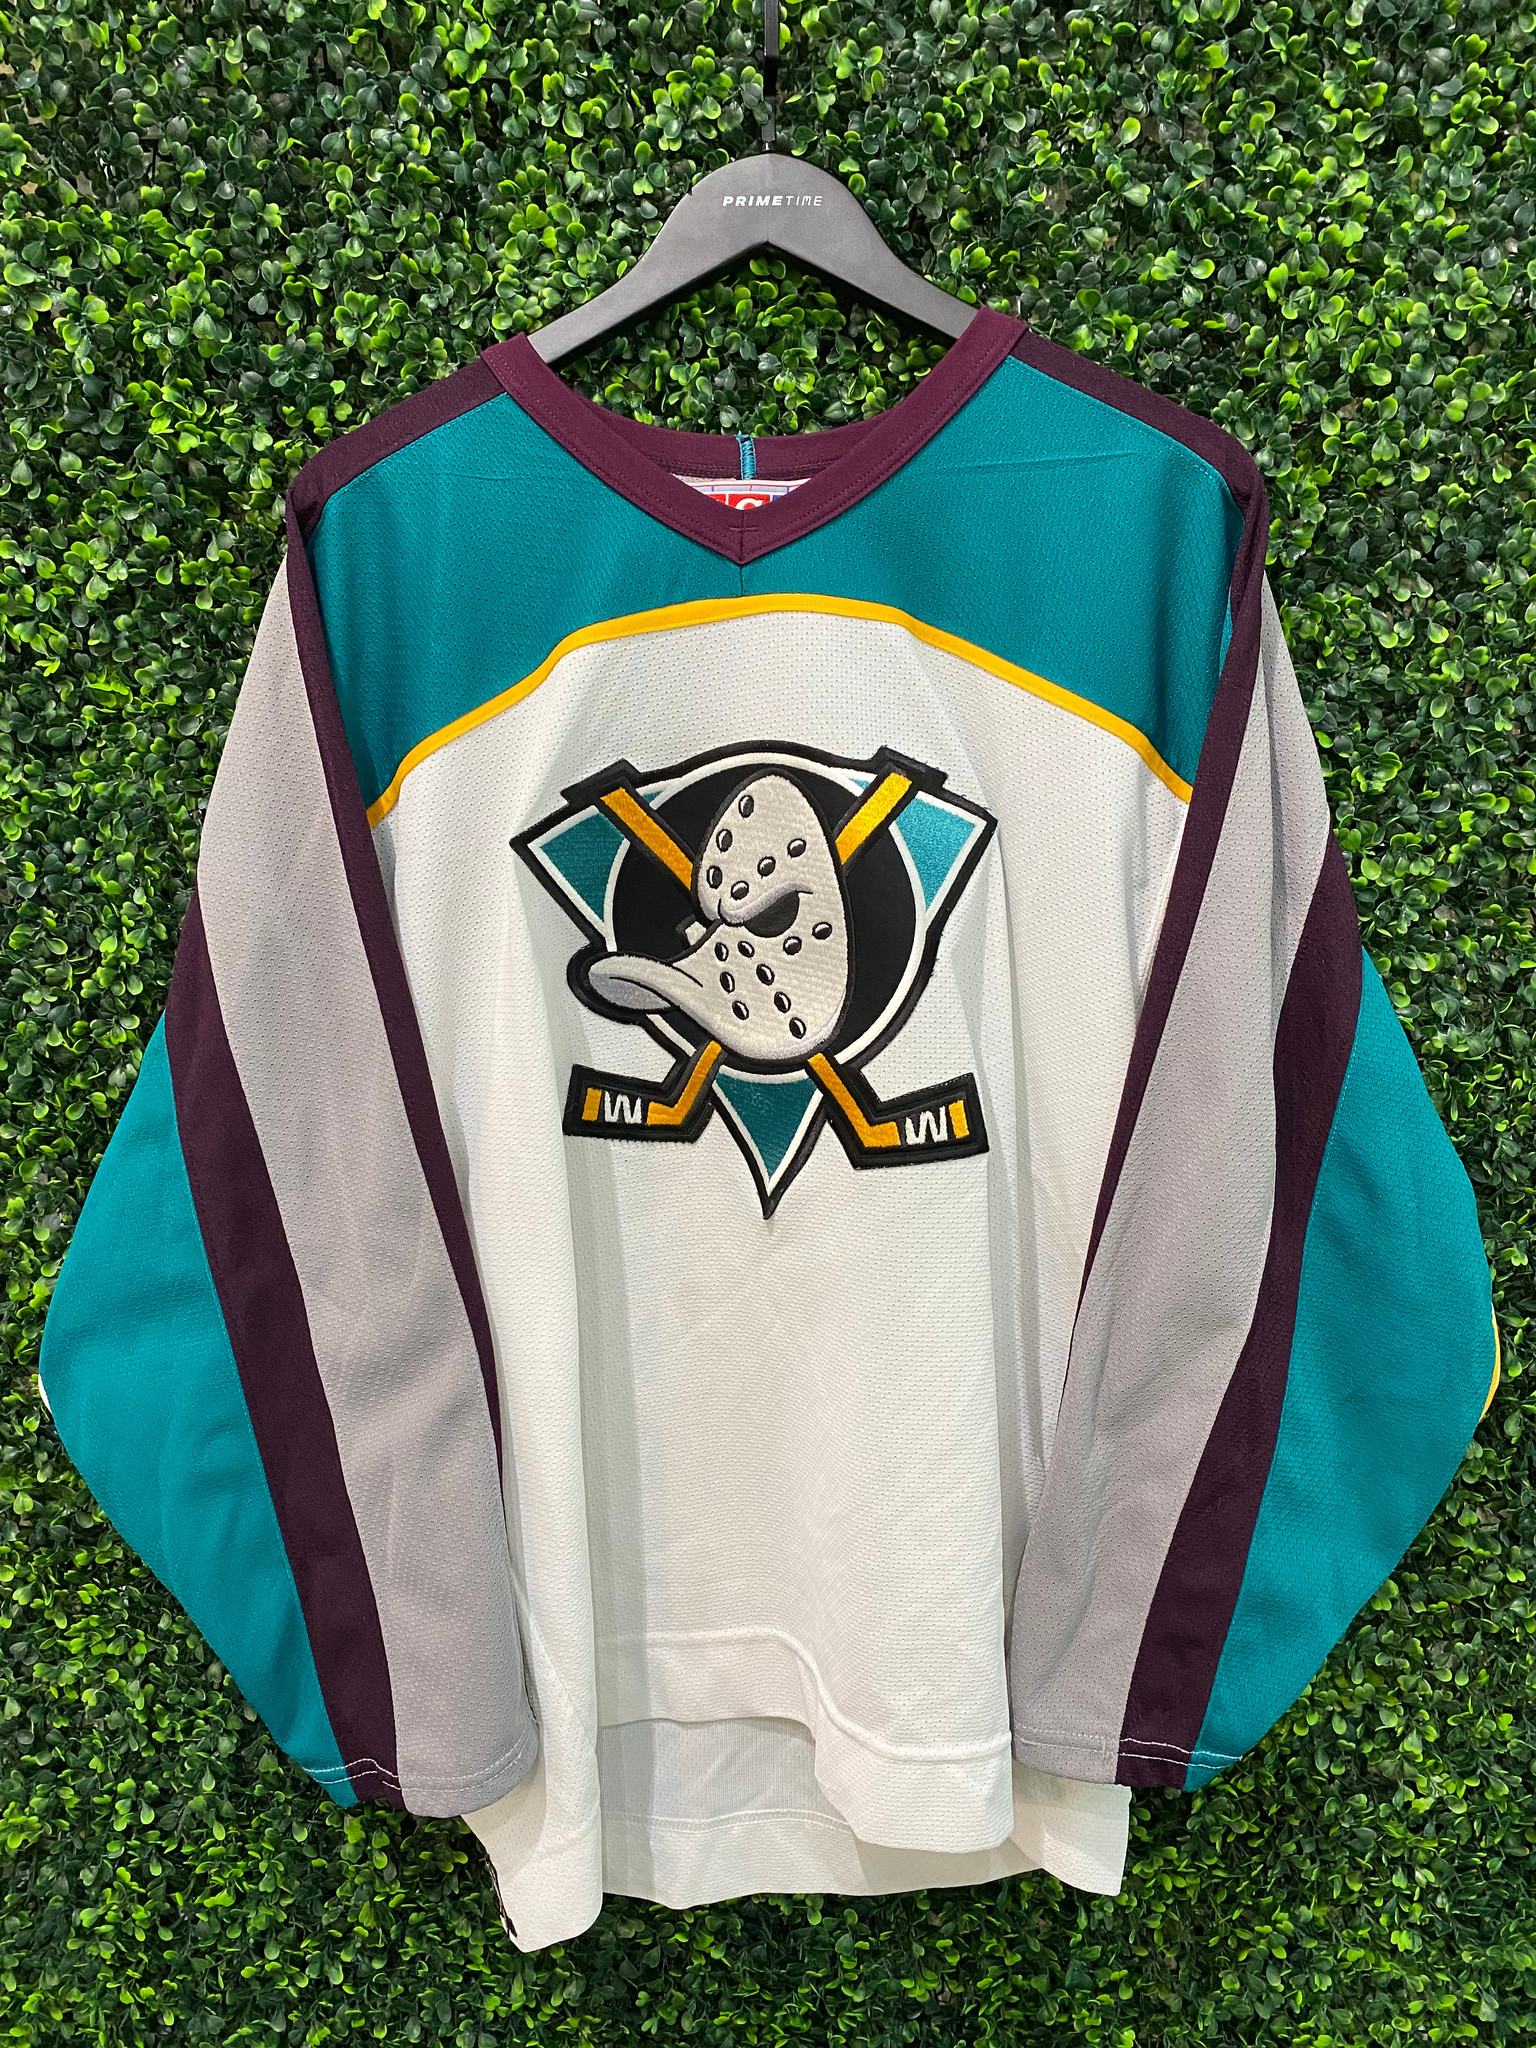 Mighty Ducks disney Anaheim Vintage ccm Hockey Jersey Sz s nhl